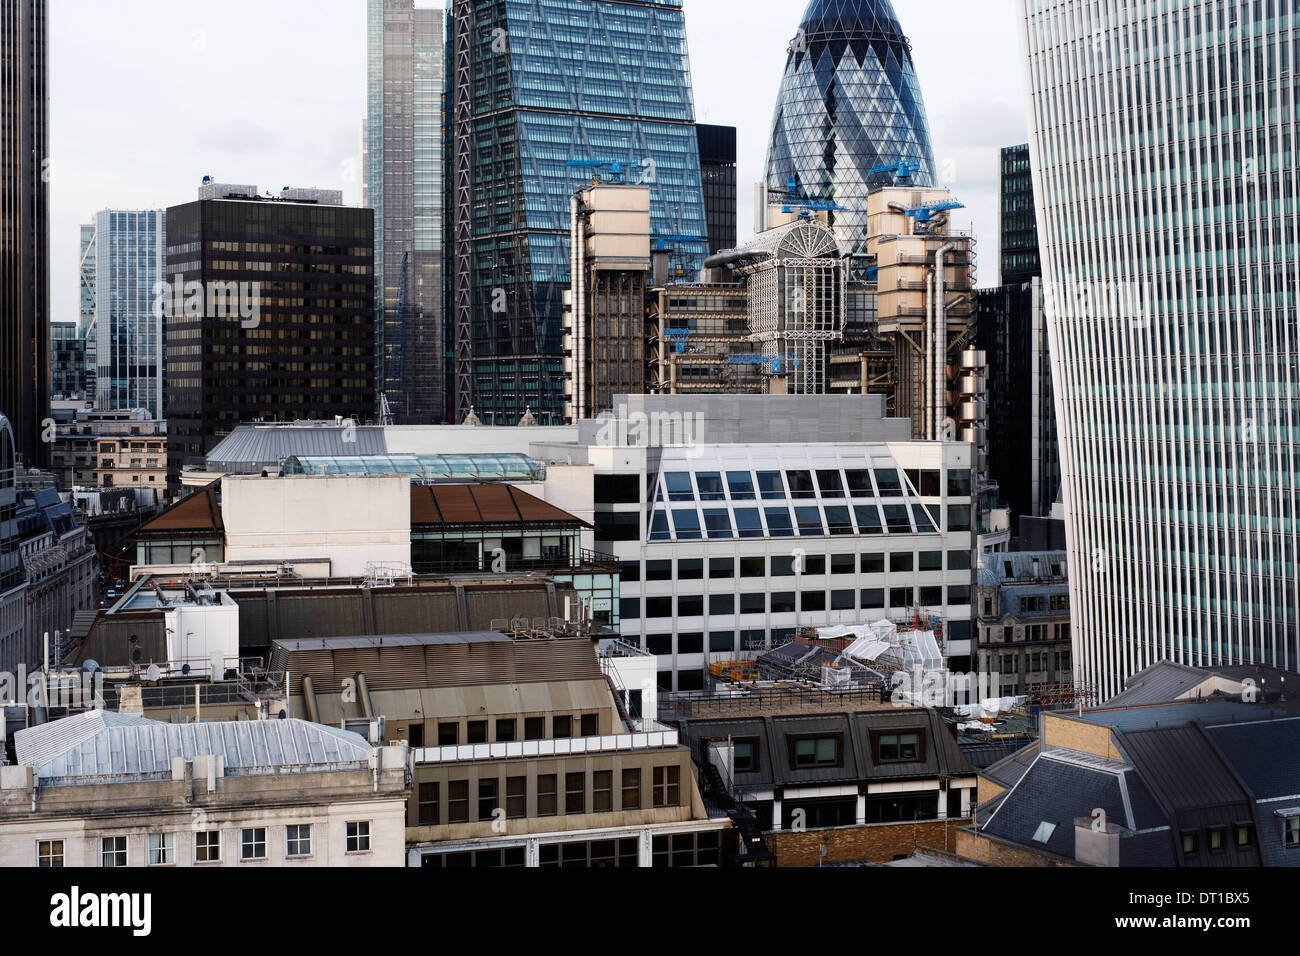 Stadtansichten London, City of London 2013, London, Vereinigtes Königreich. Architekt: verschiedene, 2013. Stockfoto